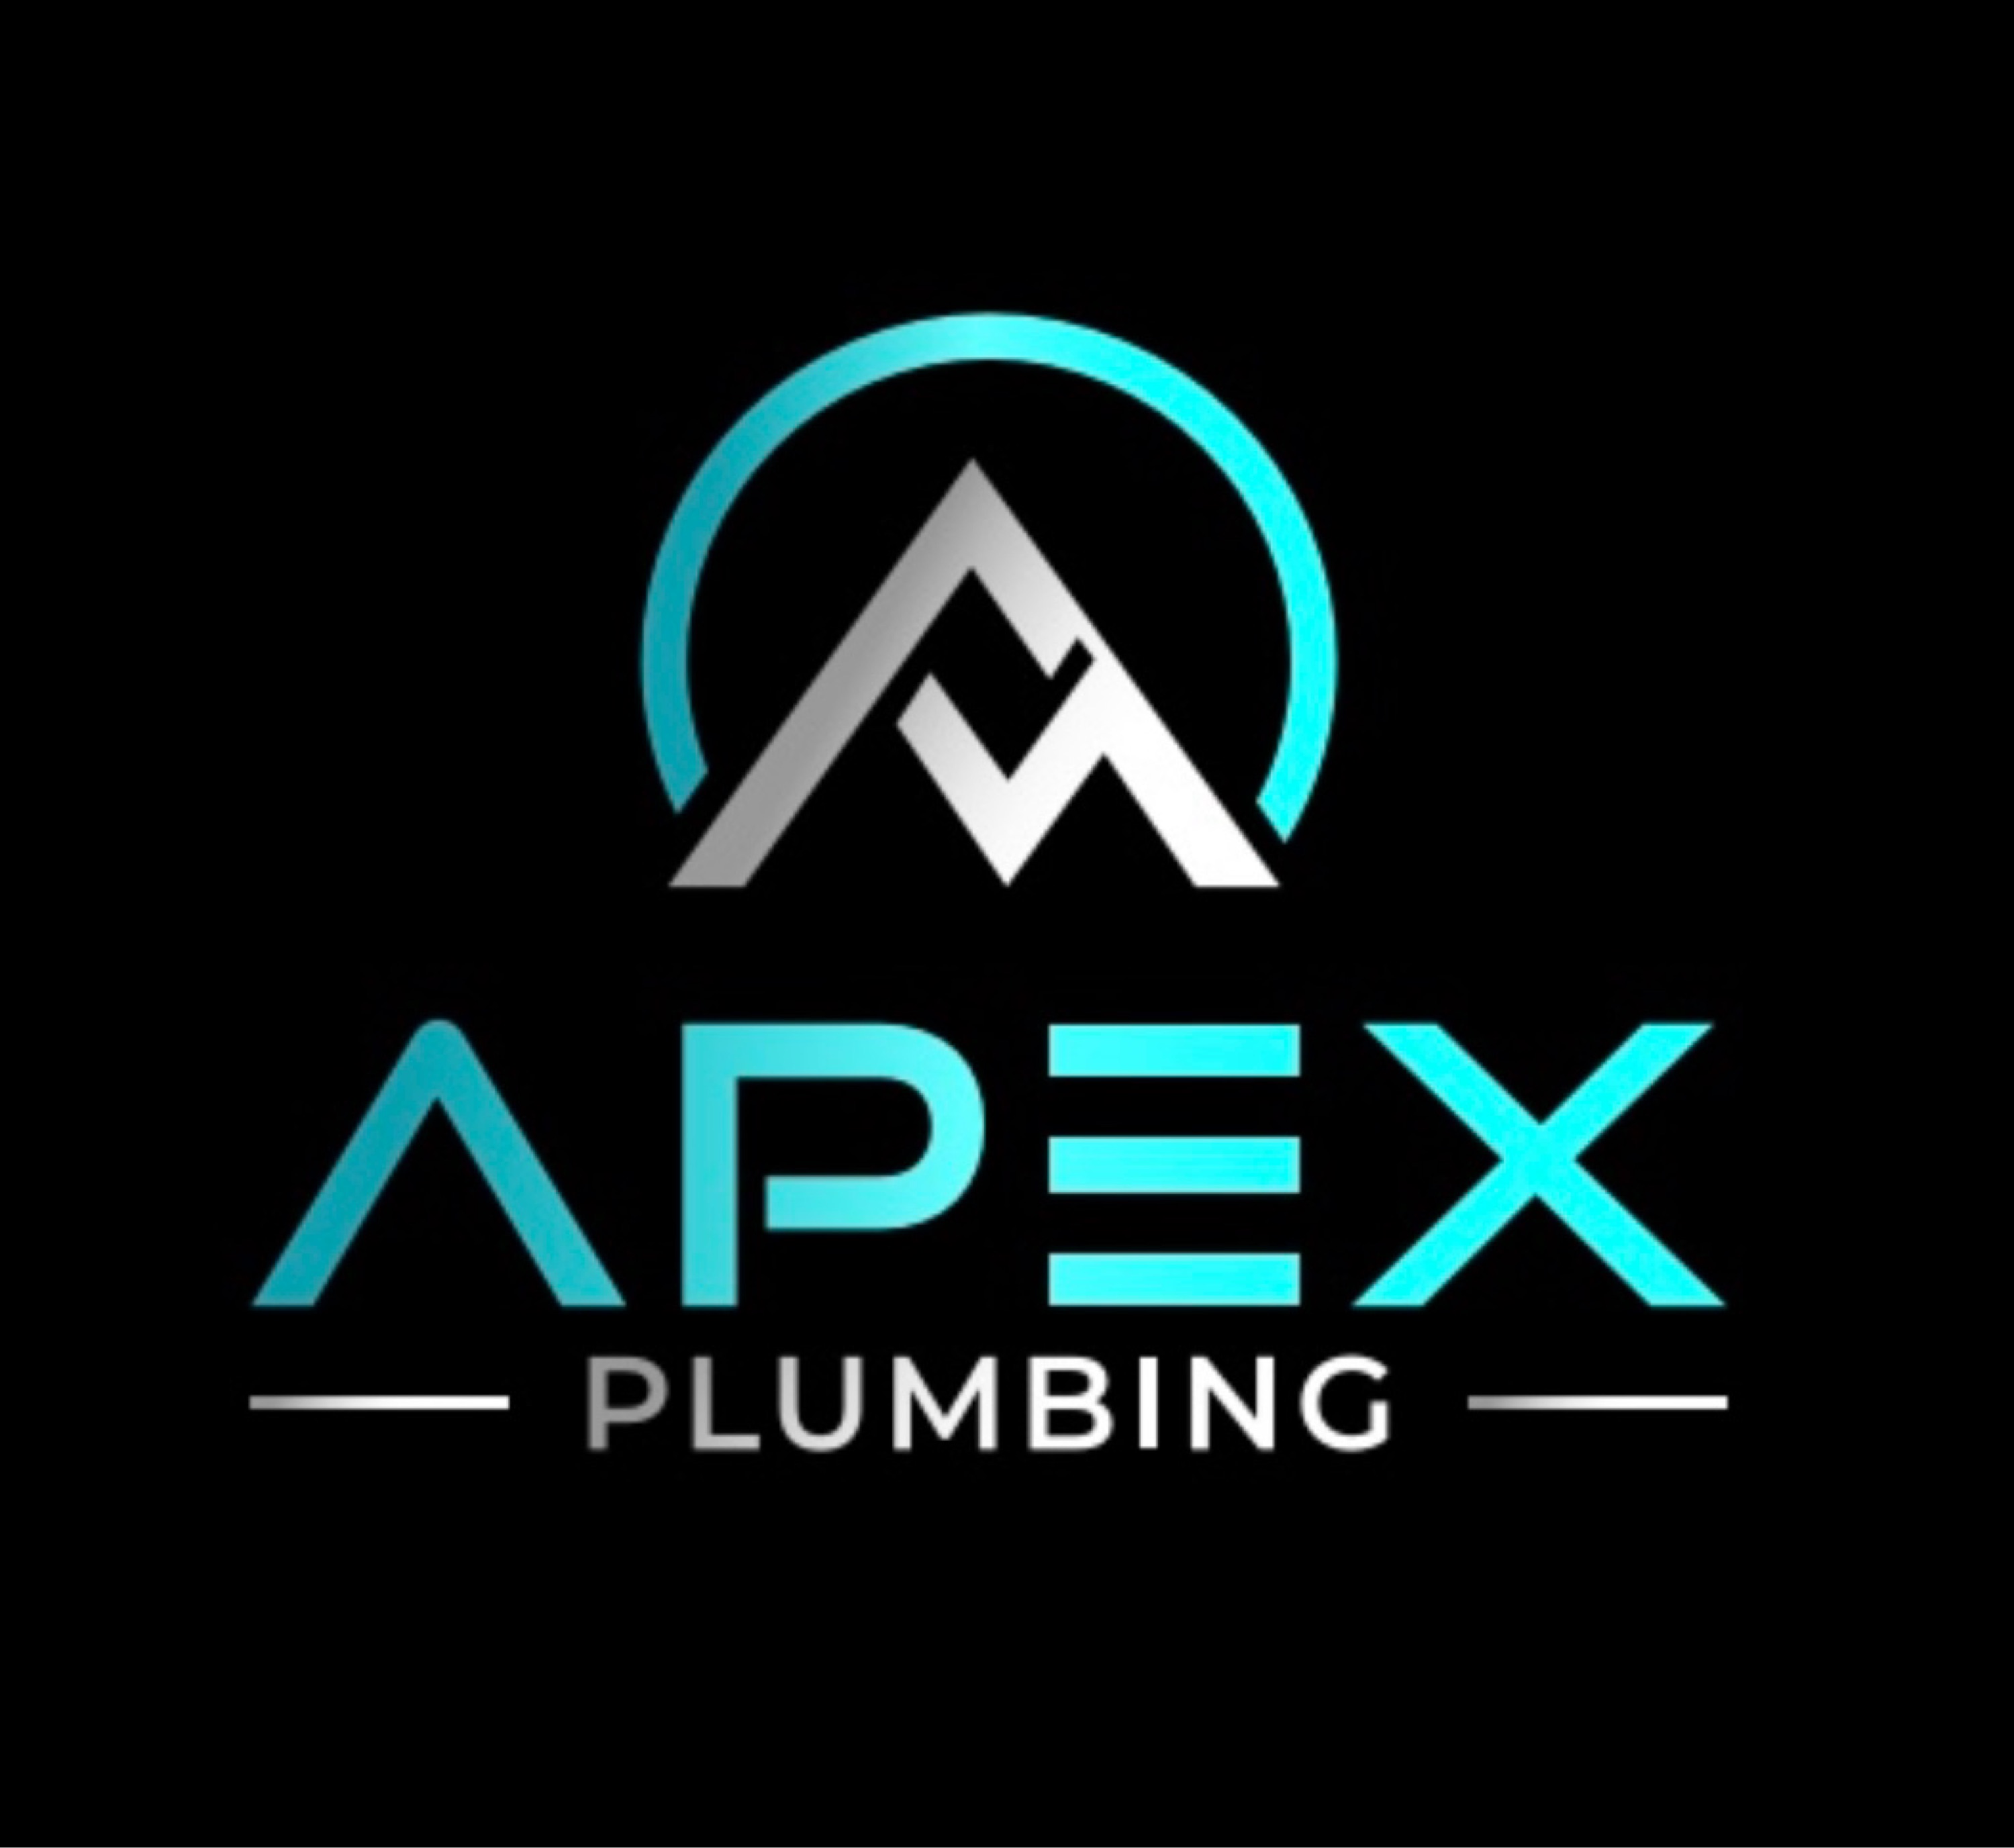 Apex Plumbing Logo